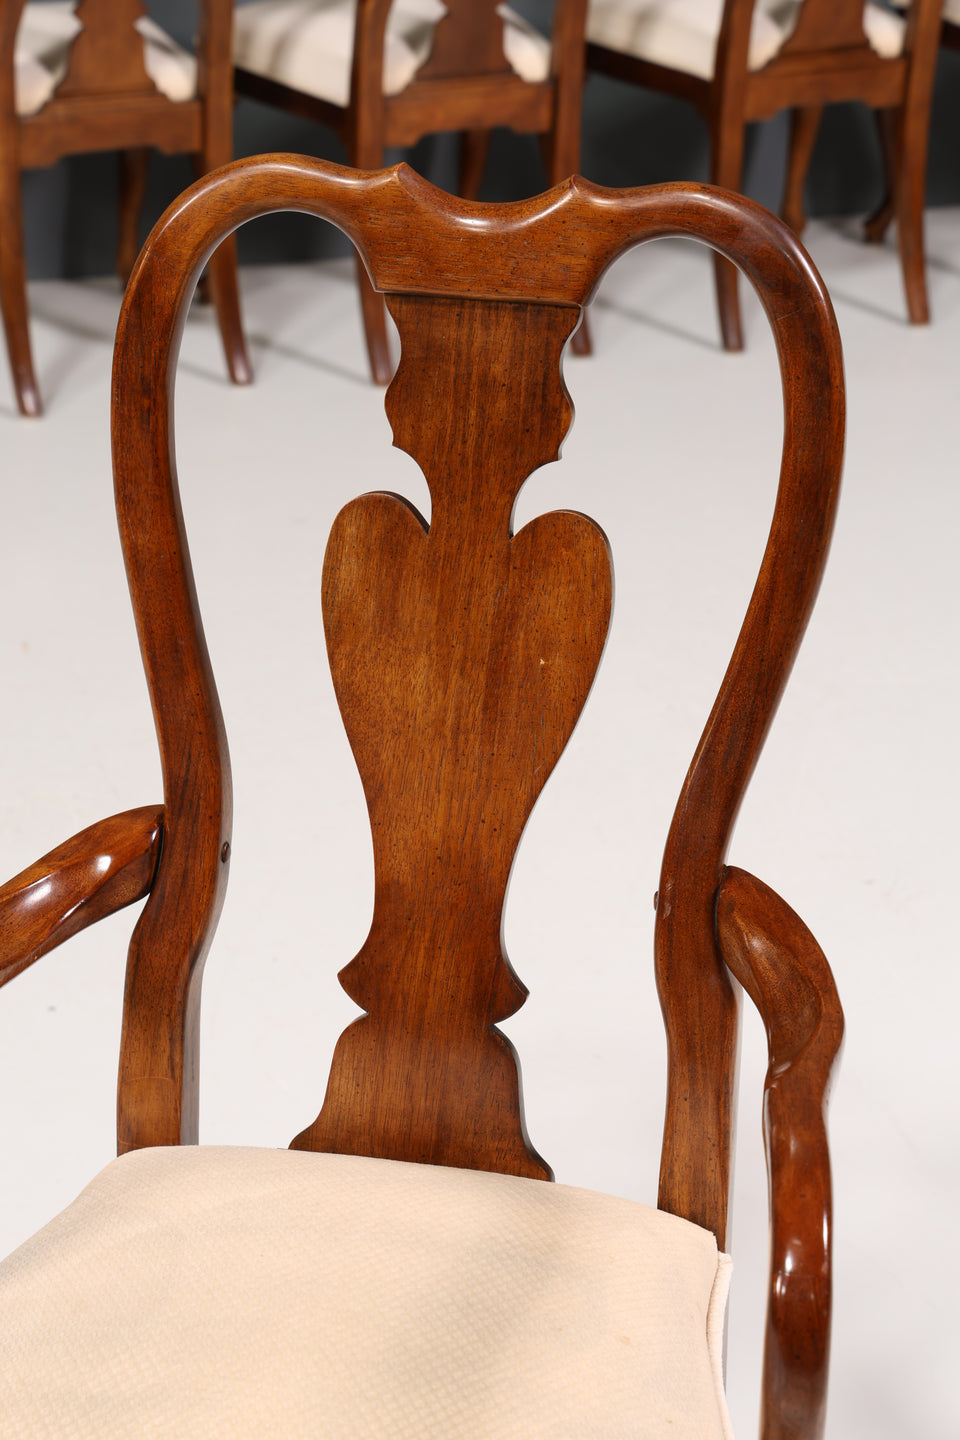 8x Wunderschöne "Queen Anne Stil" Esszimmer Stühle Küchenstühle Englisches Stuhl Set